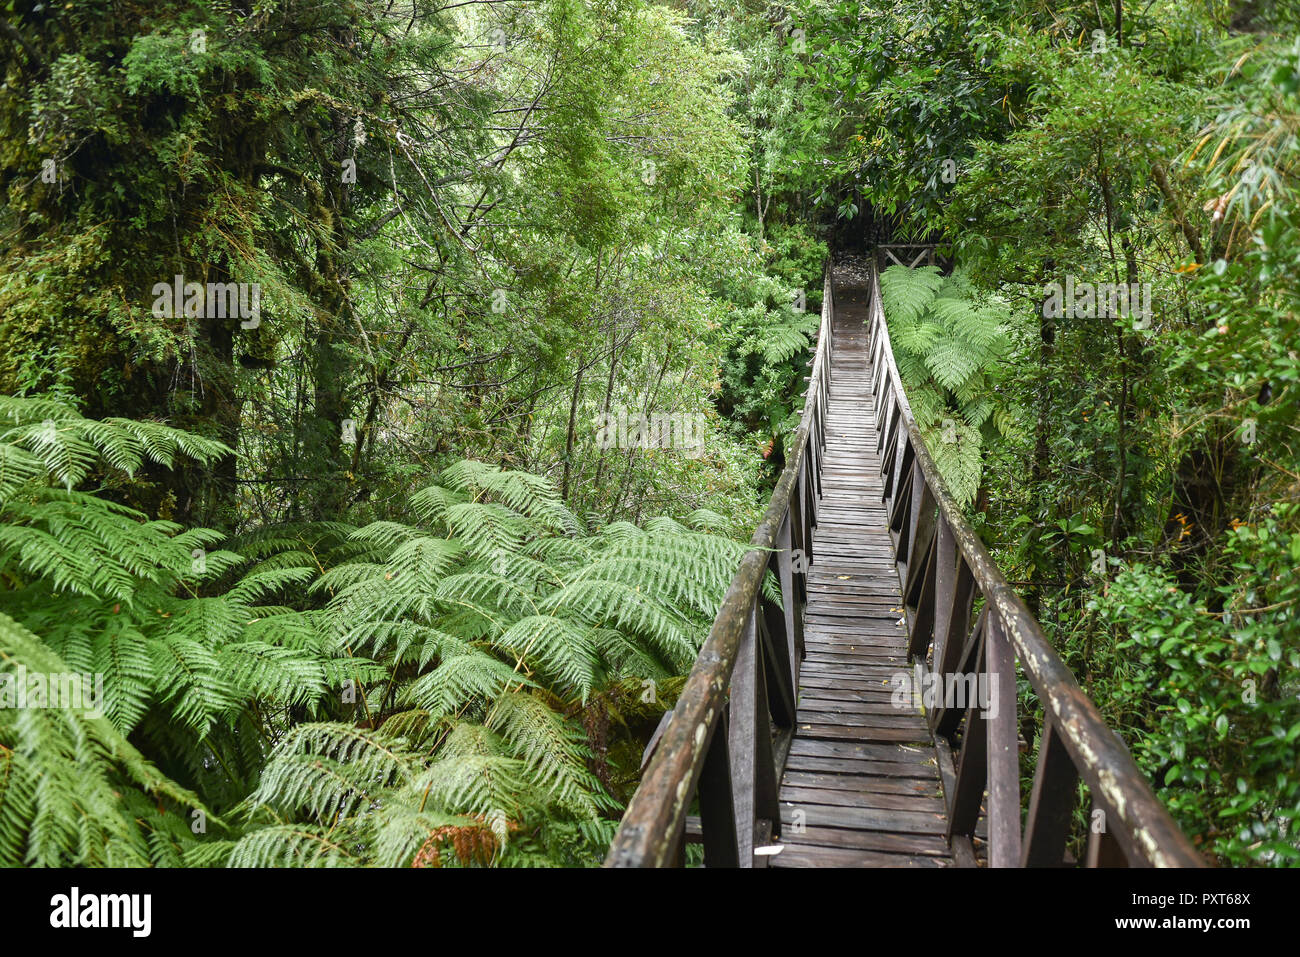 Puente de madera a través de helechos, bosques lluviosos templados, Carretera Austral, el Parque Pumalín, Chaitén, Región de los Lagos, Patagonia Foto de stock